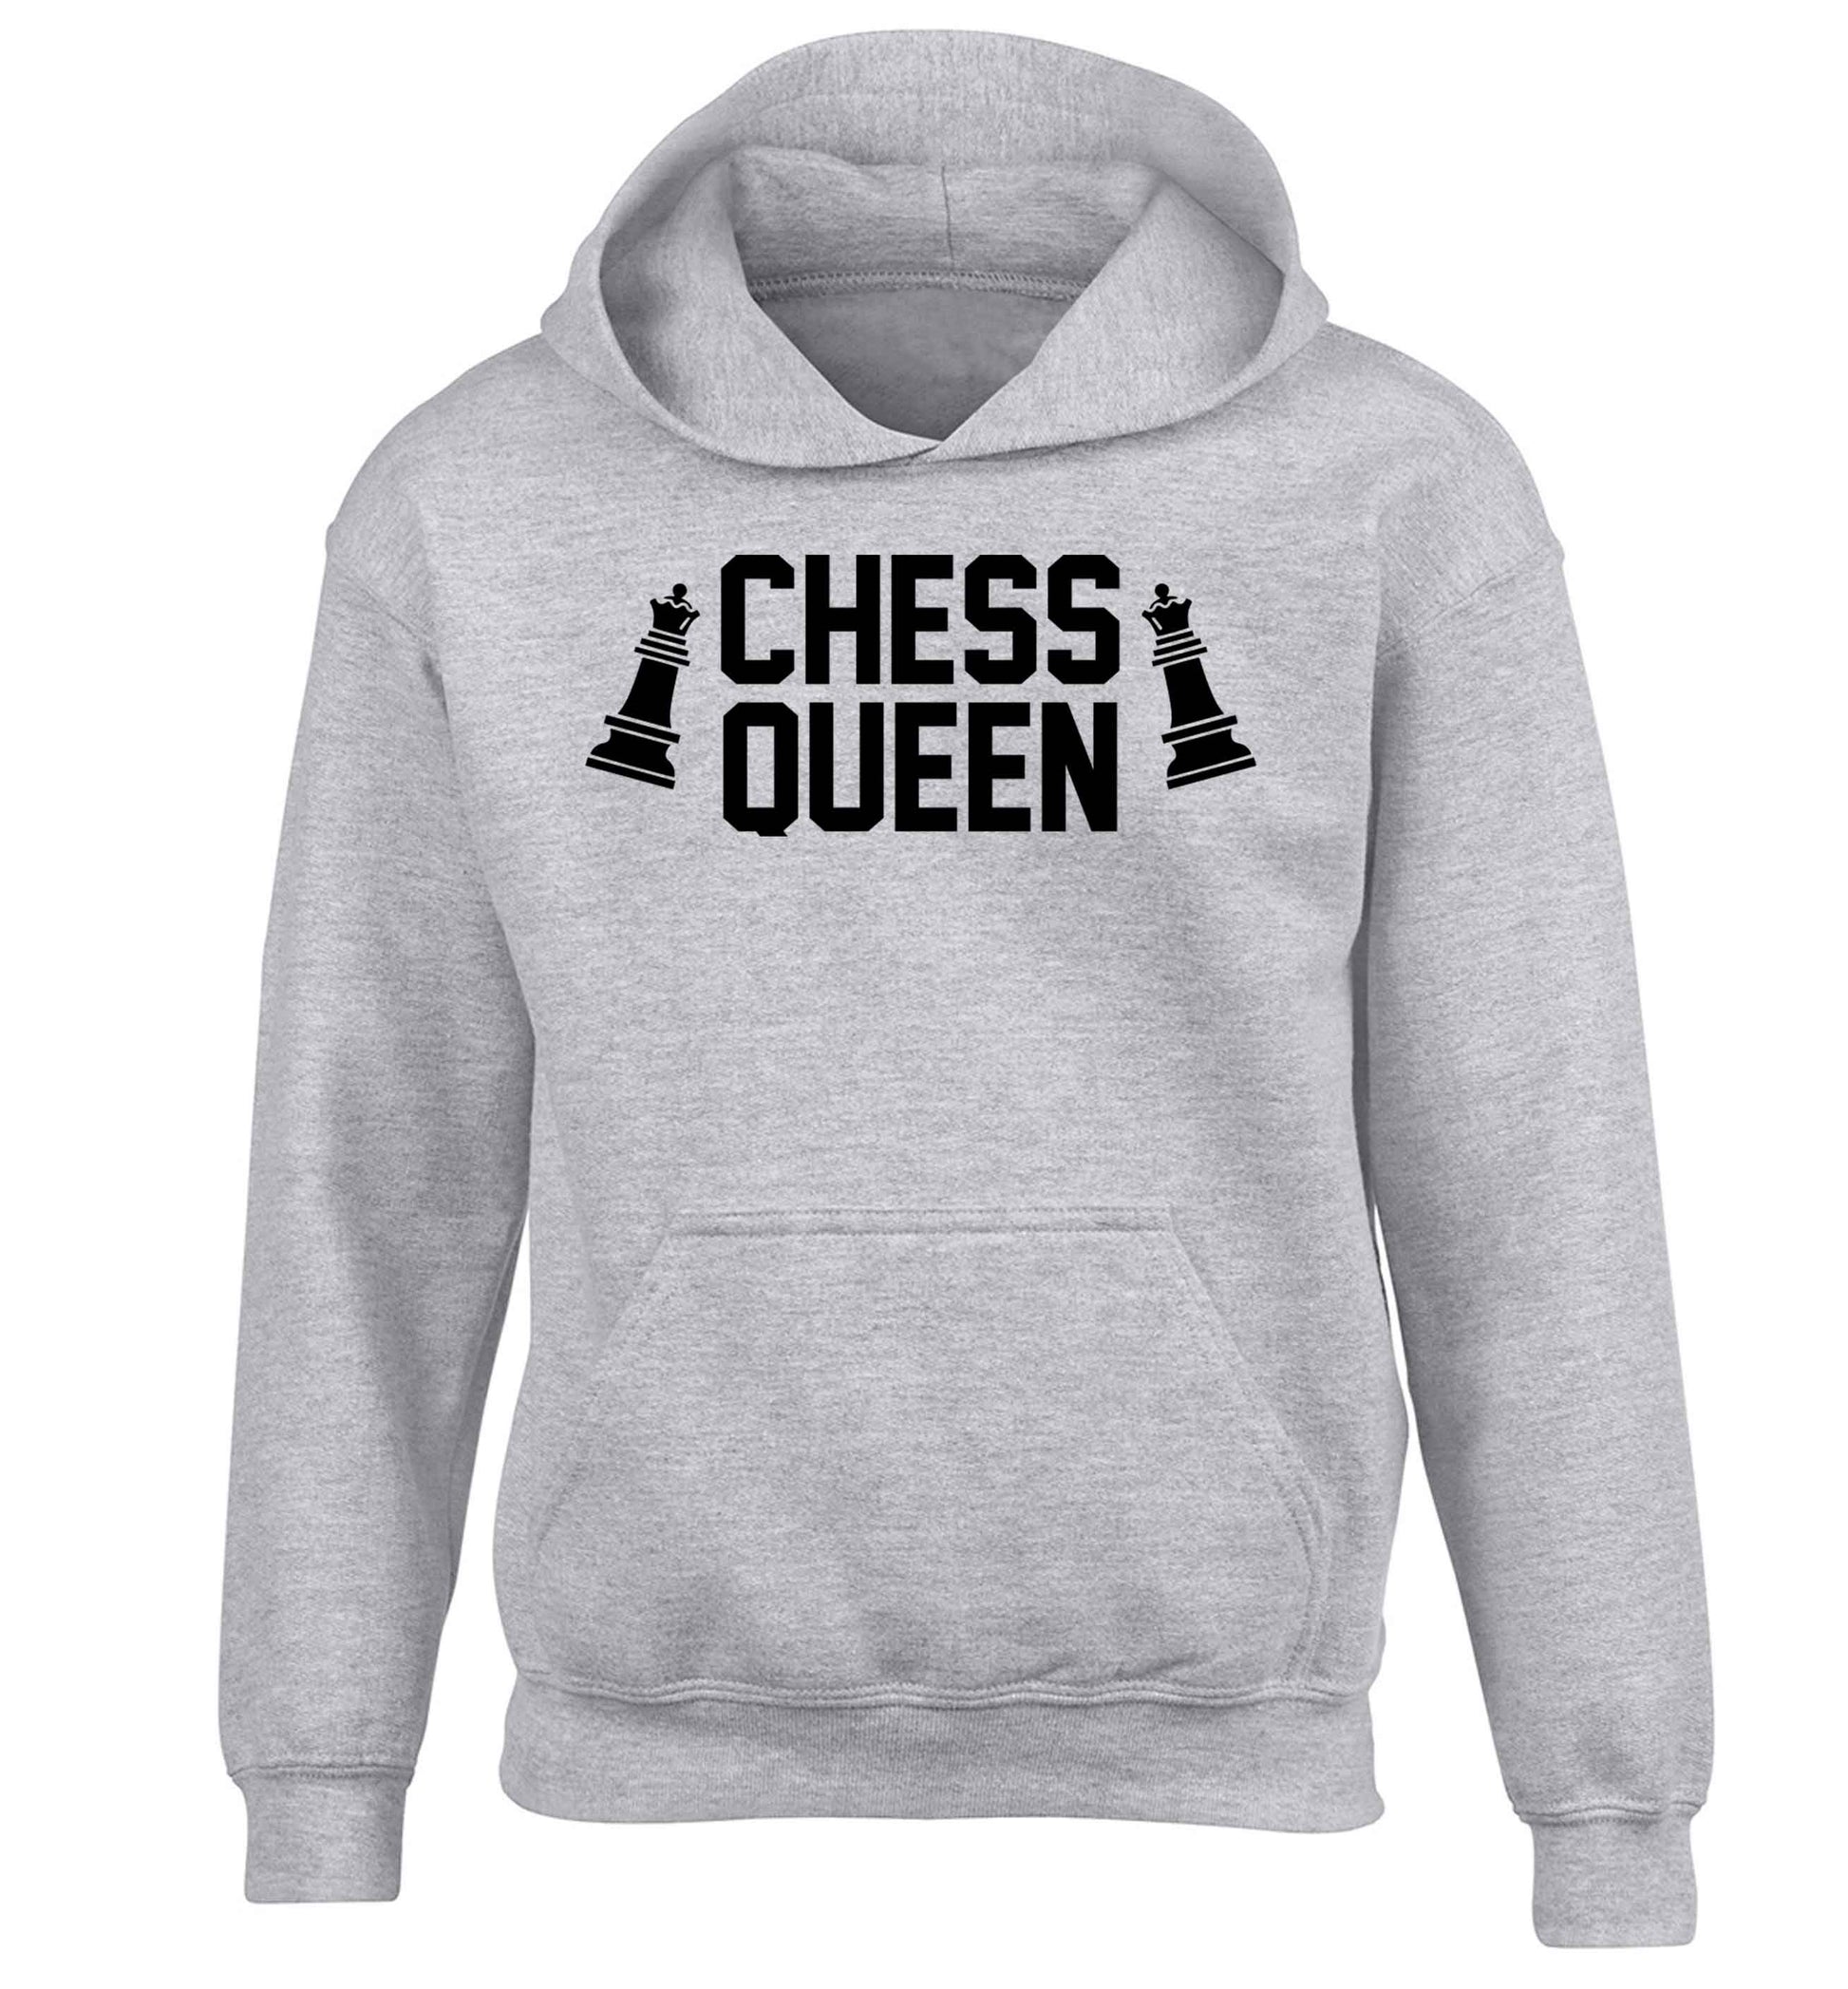 Chess queen children's grey hoodie 12-13 Years